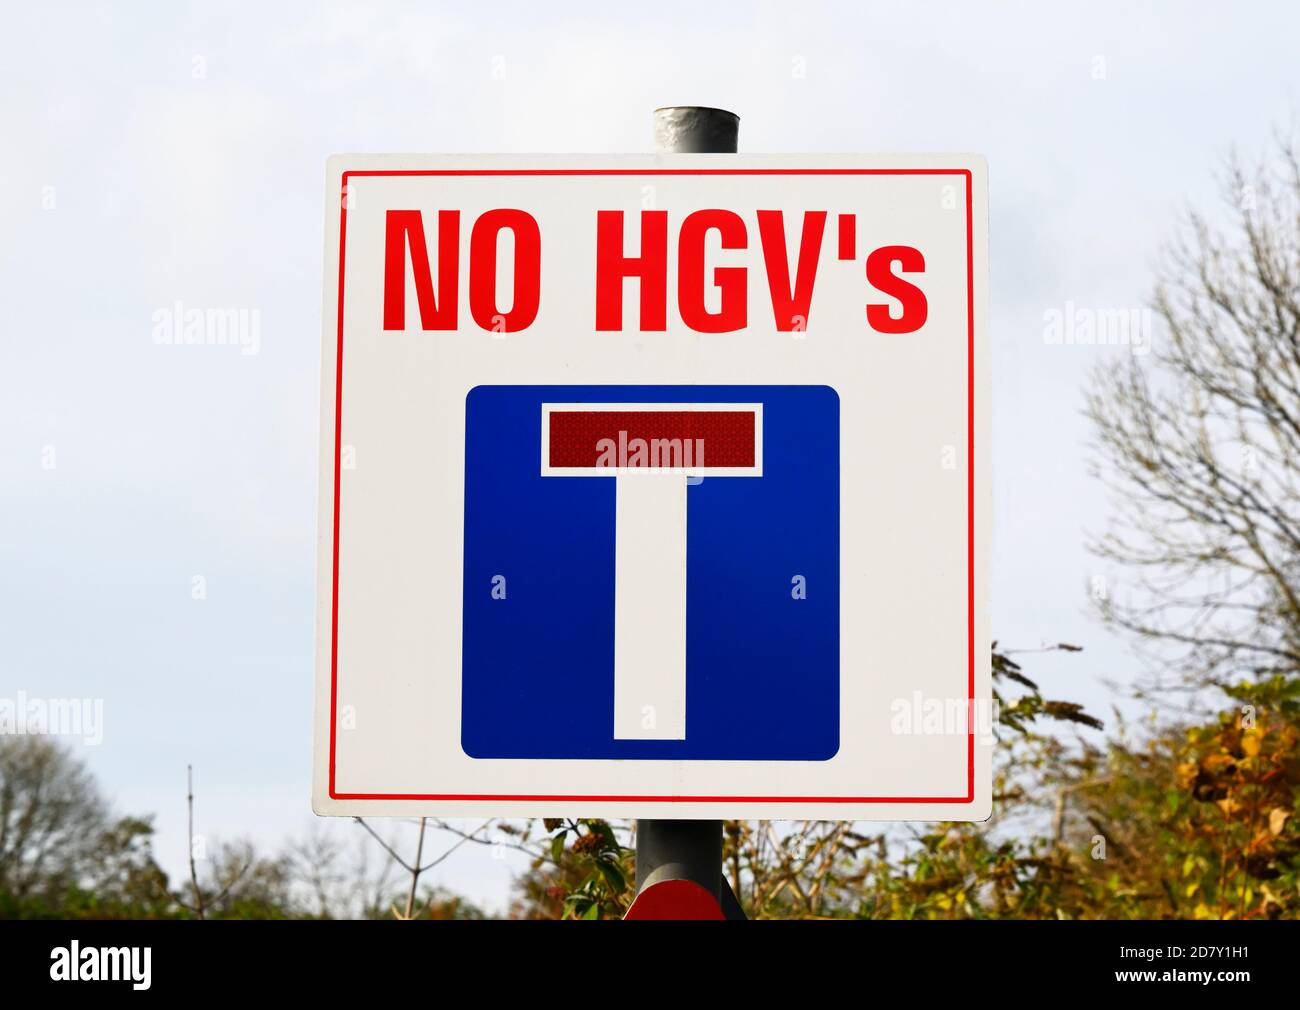 Signe d'avertissement avec apostrophe mal placée, « PAS de VHG ». Boundary Bank Lane, Kendal, Cumbria, Angleterre, Royaume-Uni. Banque D'Images